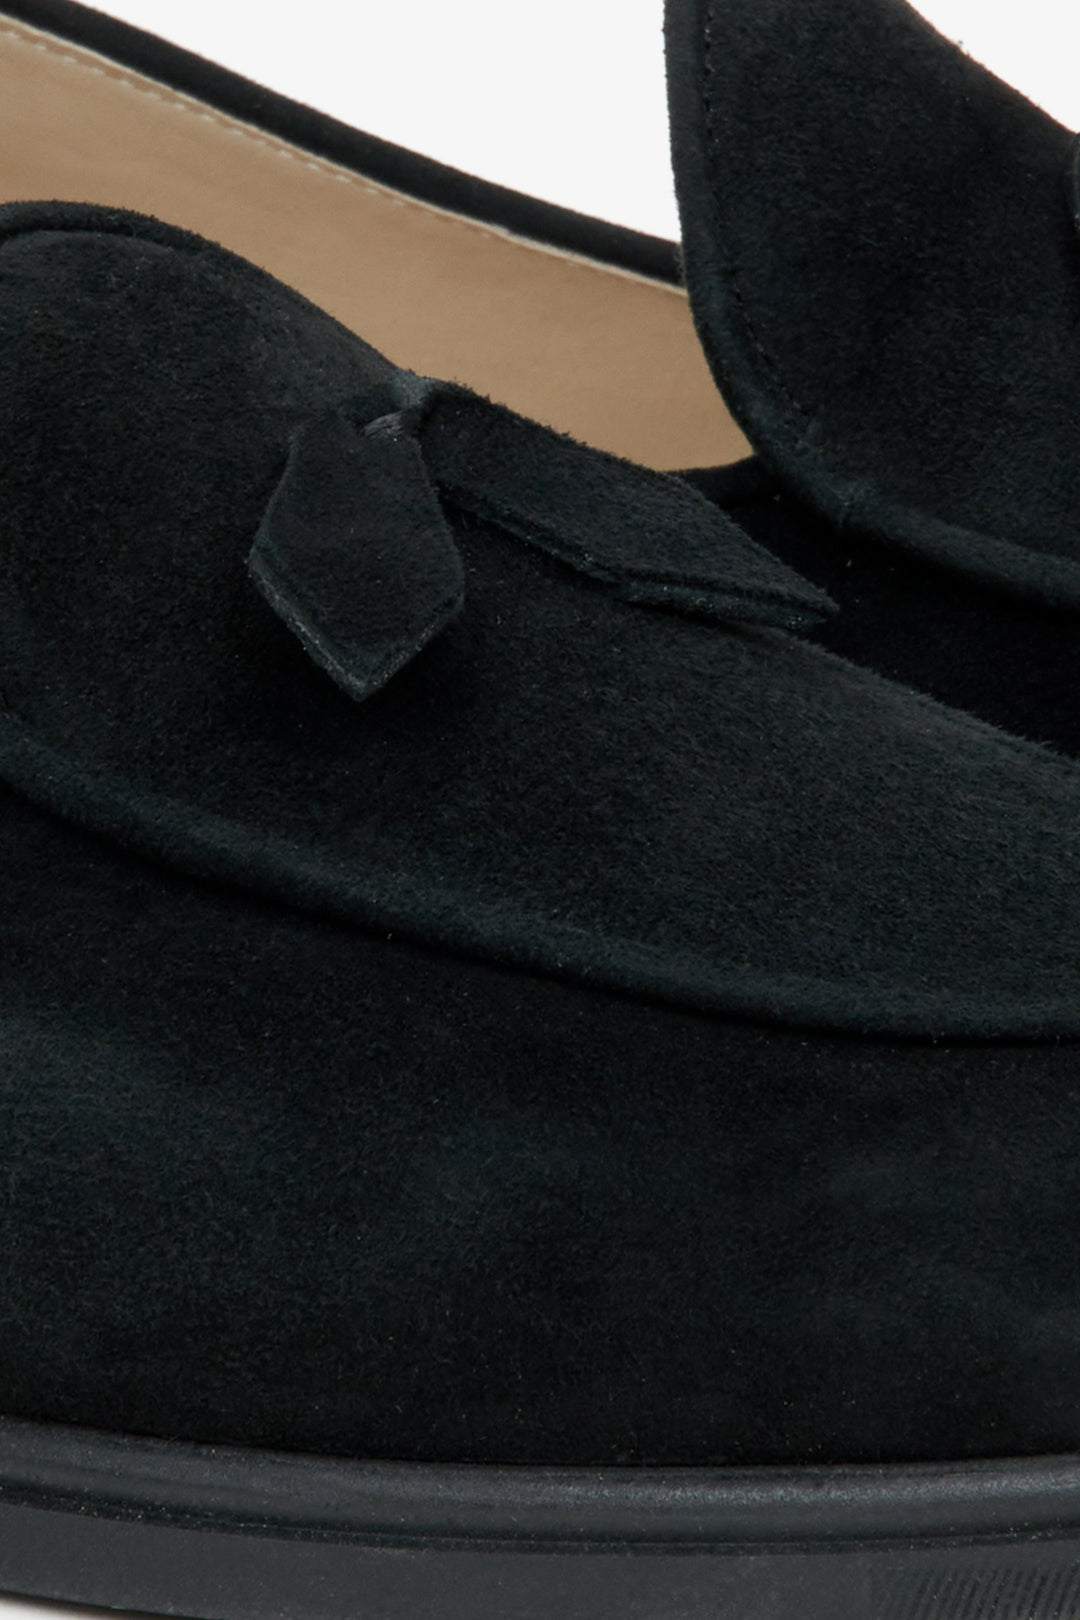 Women's black velour moccasins by Estro - close-up on details.